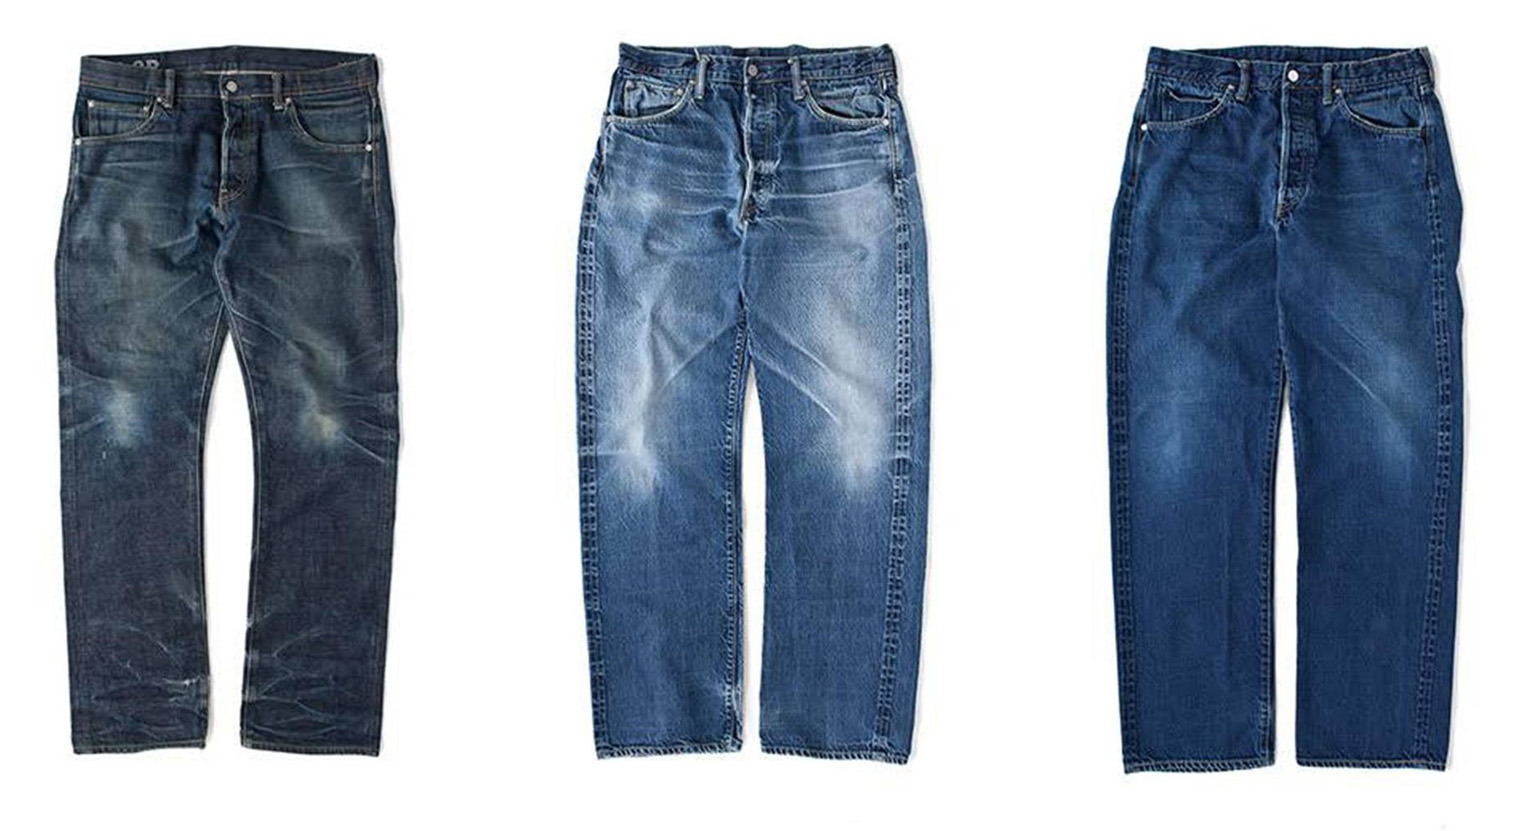 дизайнерские джинсы купить в москве